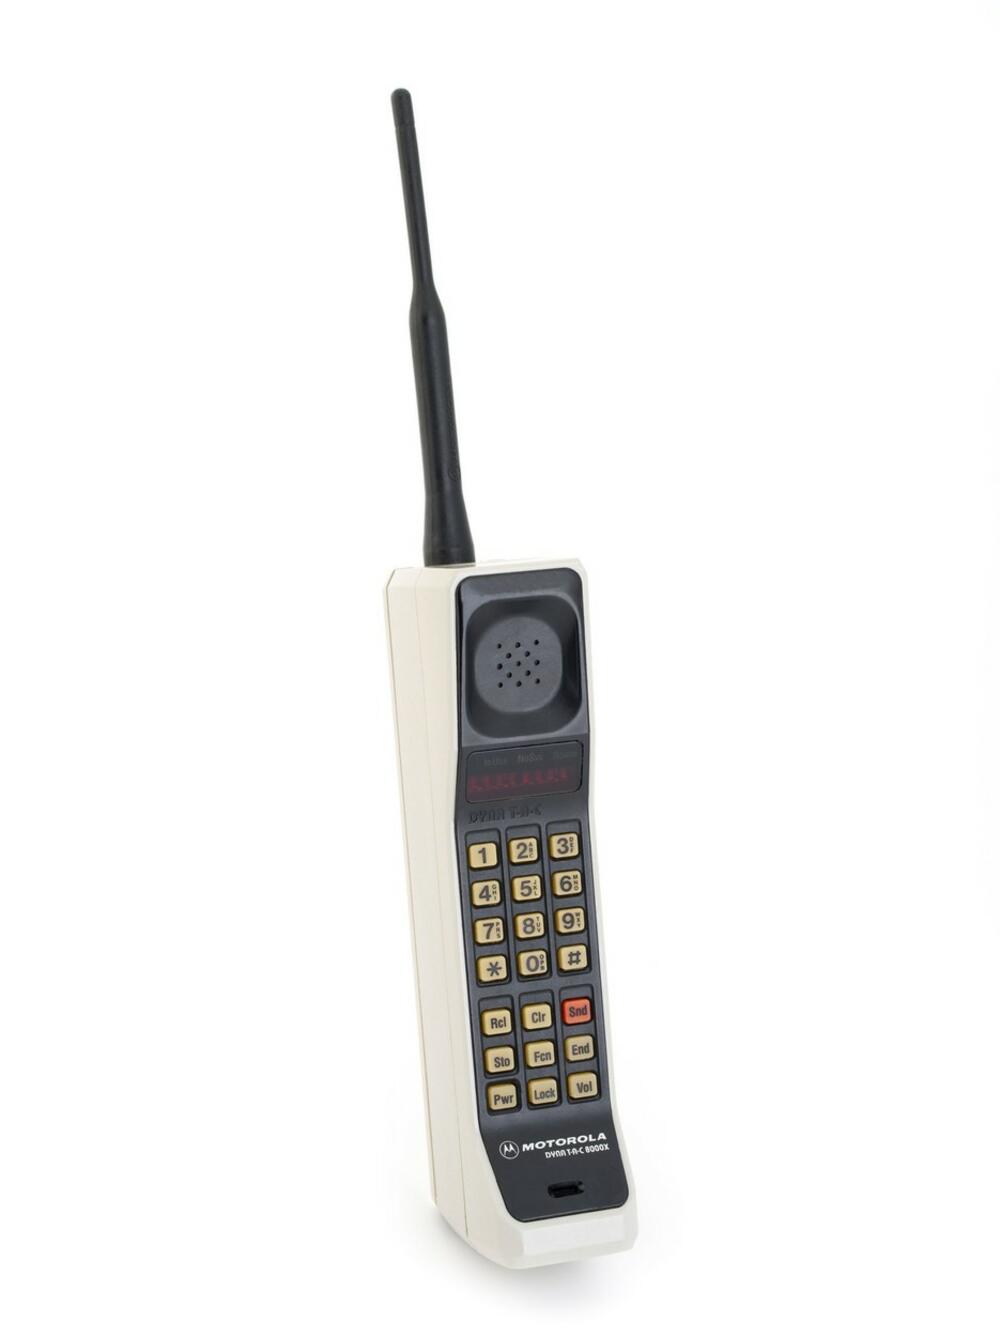 Motorola DynaTAC 8000x, prvi mobilni